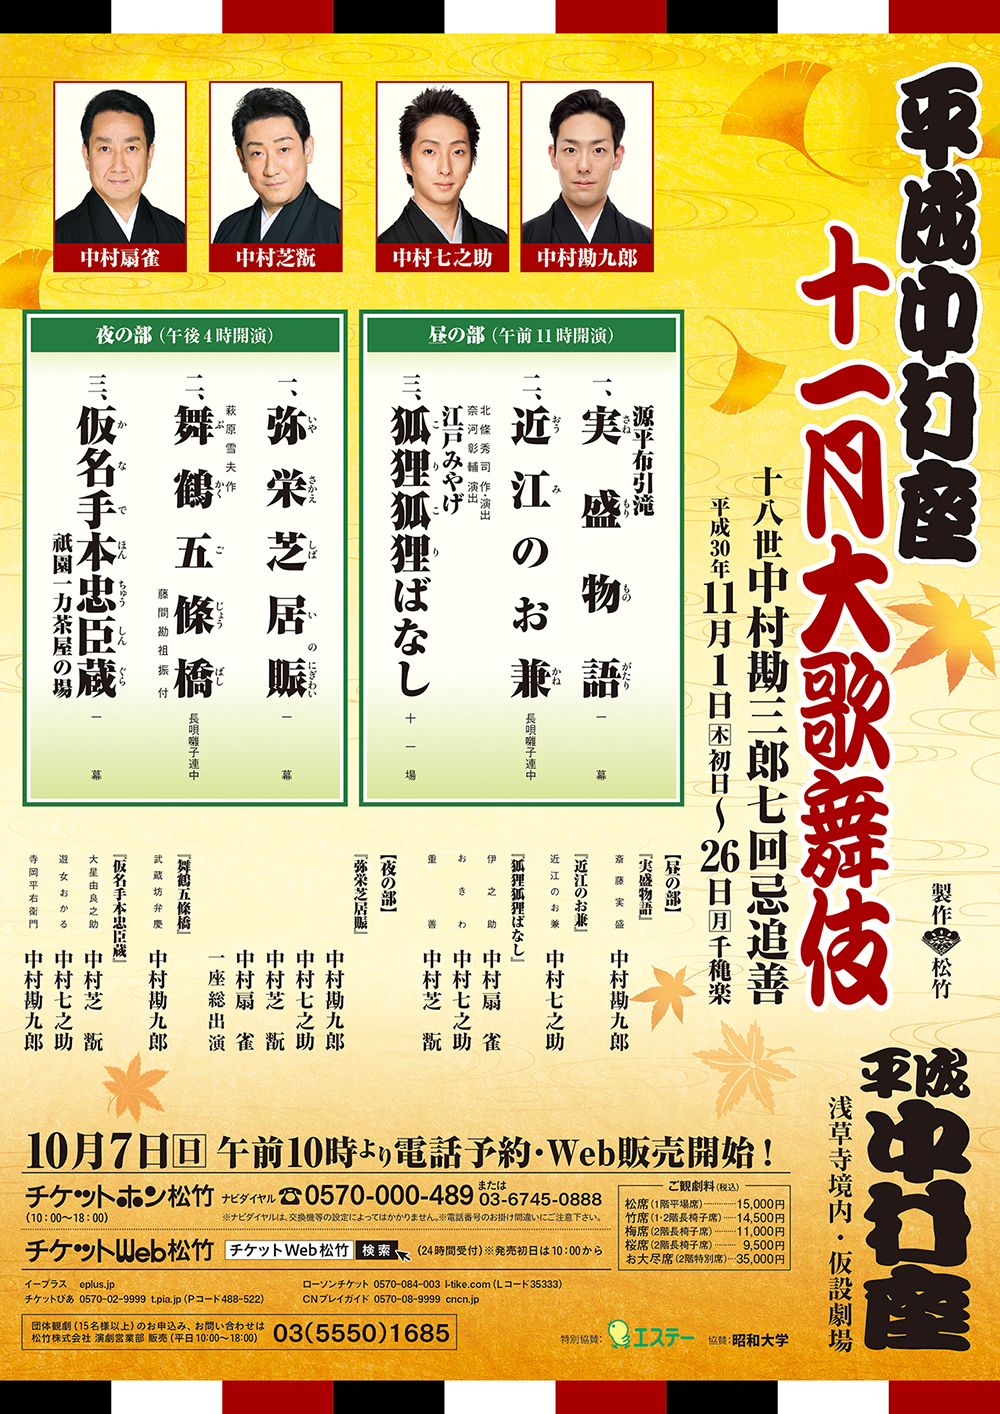 November at the Heisei NAKAMURA-ZA Theatre